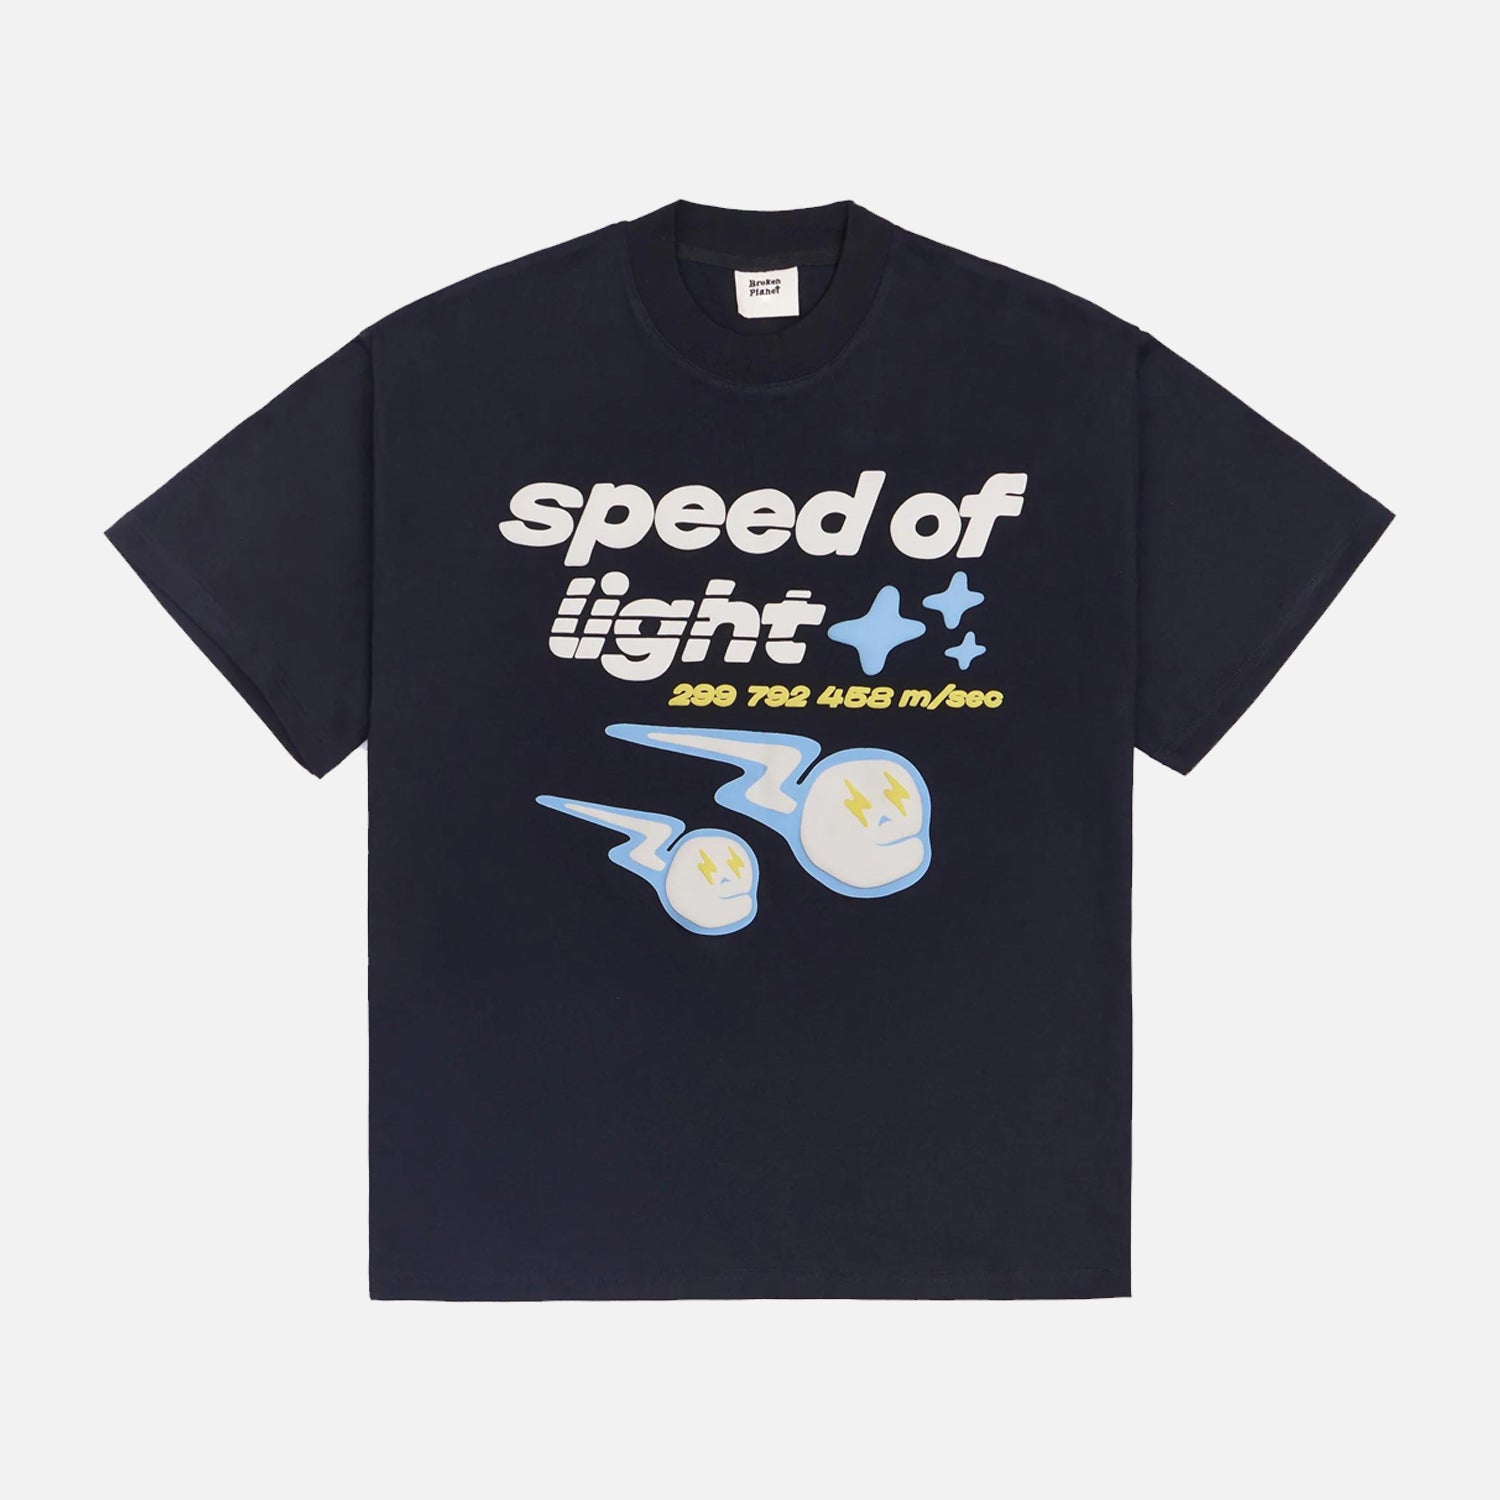 Broken Planet Market 'Speed of Light' T-Shirt - Midnight Black